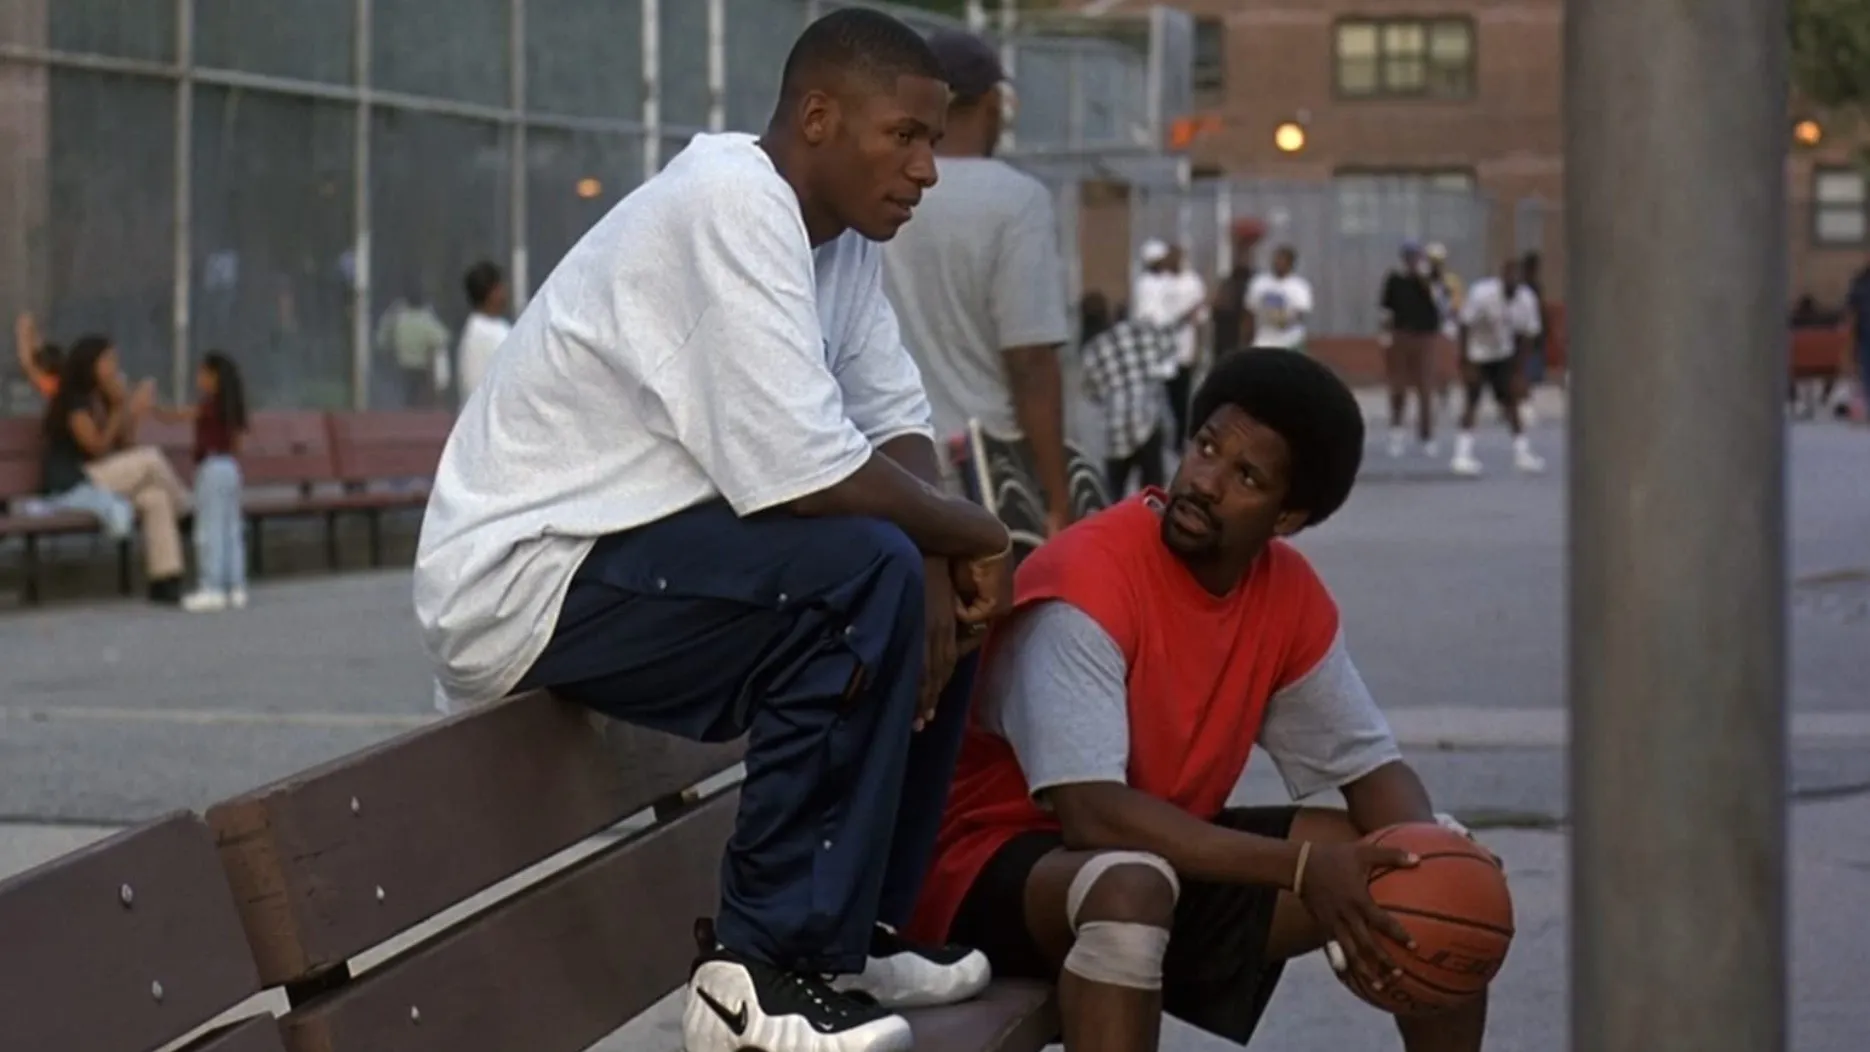 NO FILM, NO VIDEO, NO TV, NO DOCUMENTARY - New York Knicks forward